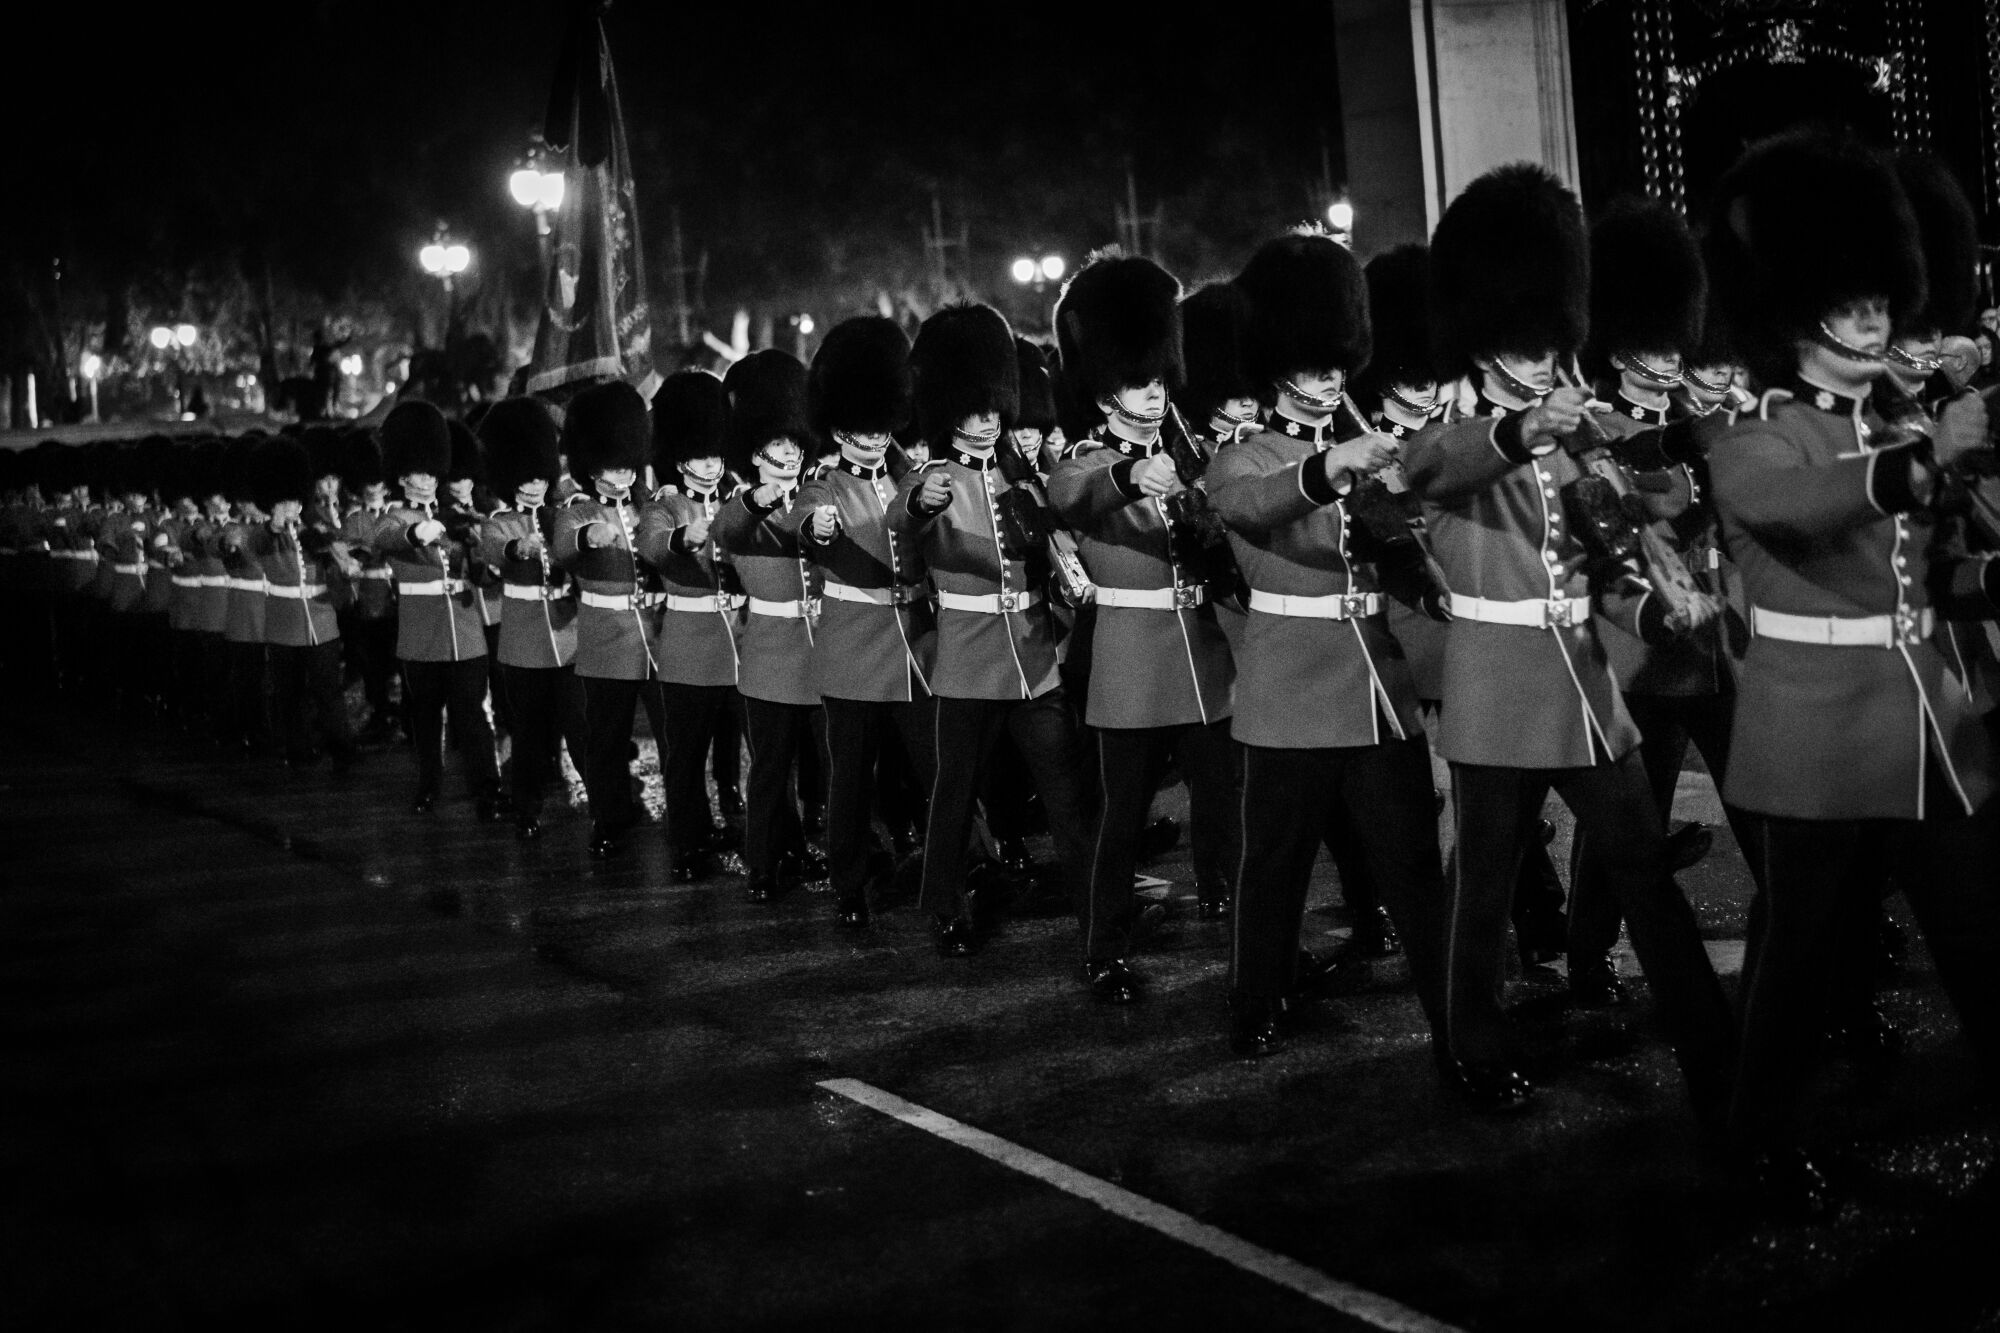 Buckingham Sarayı muhafızları geceleri uzun kuyruklar halinde yürüyor.